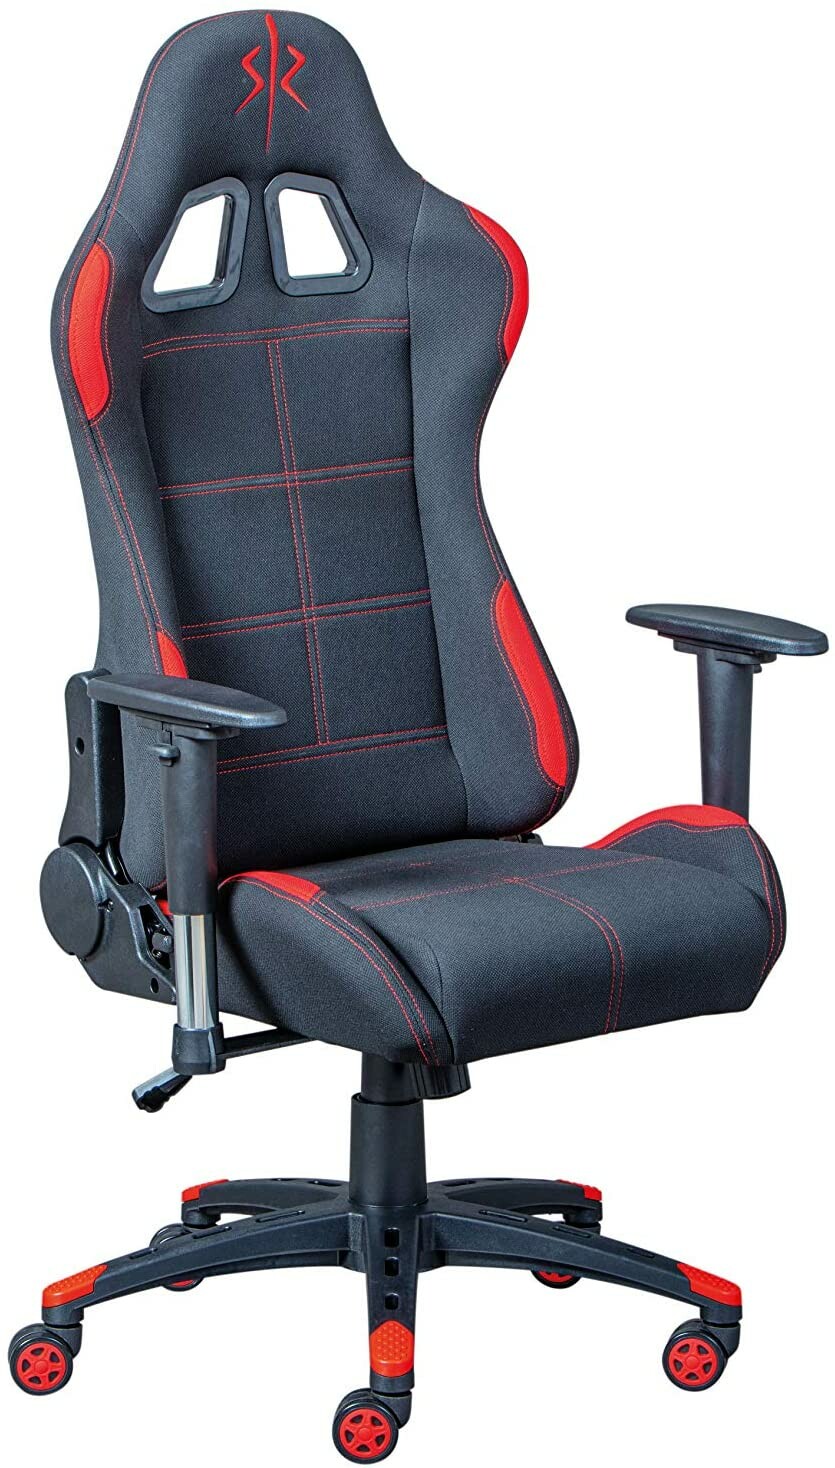 Chaise gaming : remise exceptionnelle sur les fameux fauteuils Interlink  que les gamers s'arrachent